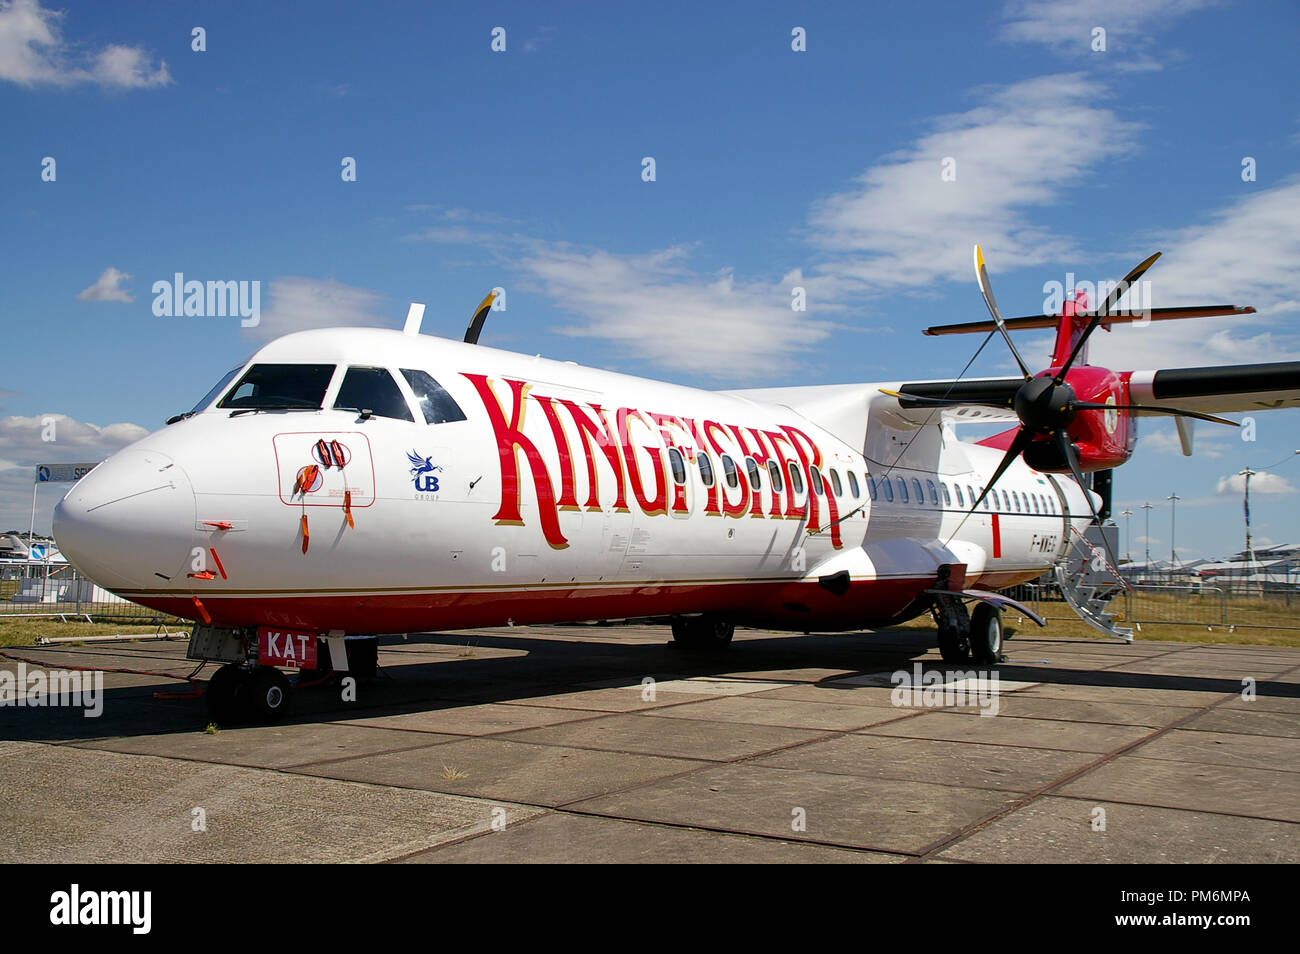 Kingfisher Airlines ATR72 ATR 72 avion à Farnborough International Airshow. F-avion WWEG. Compagnie Indienne. L'espace pour copier Banque D'Images